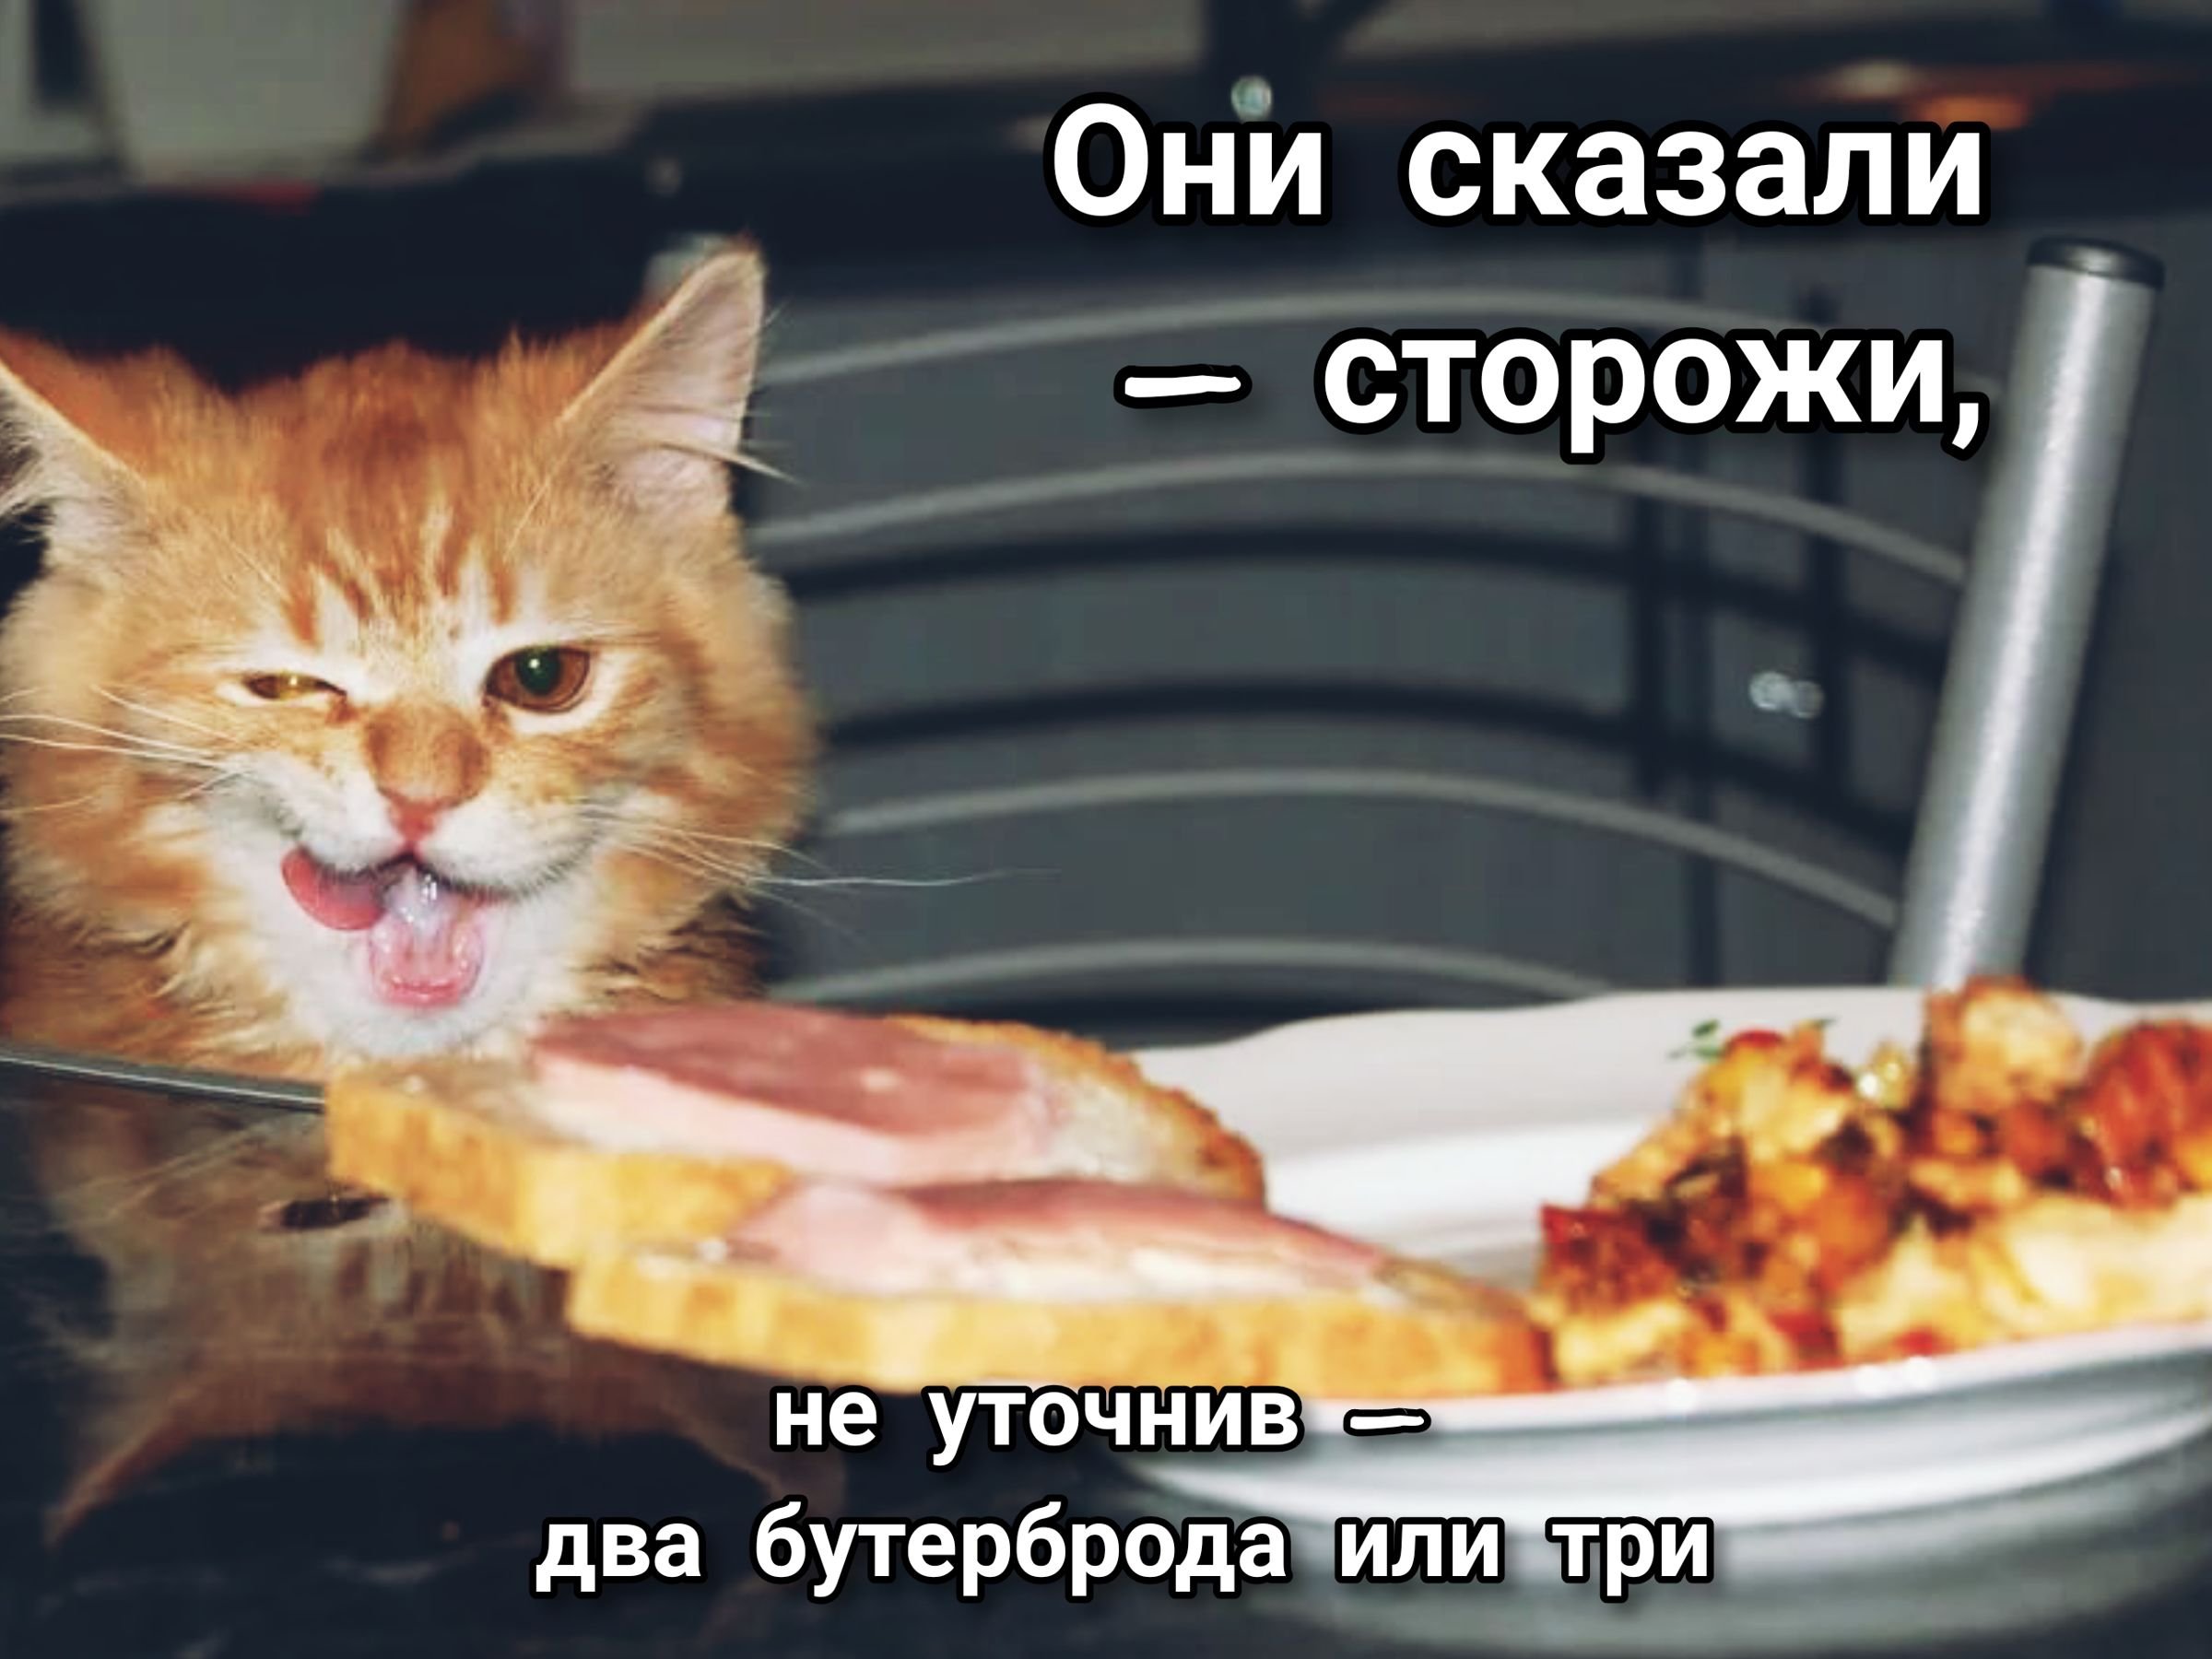 Кот ест приятного аппетита